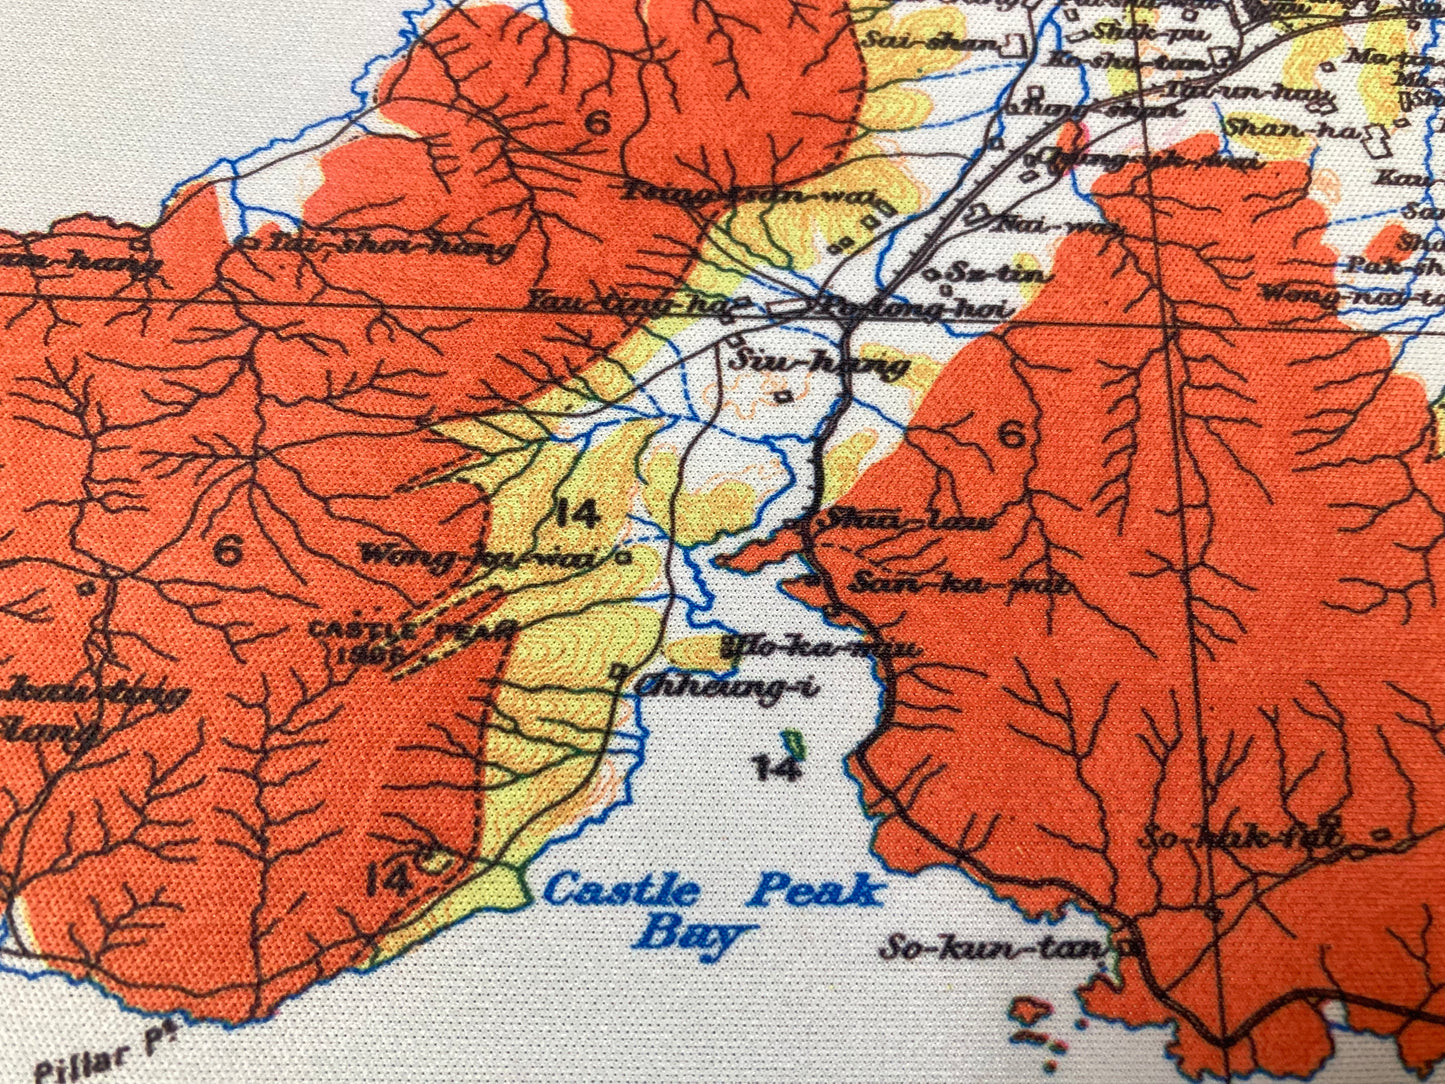 重製版1932年香港全境地質地圖滑鼠墊